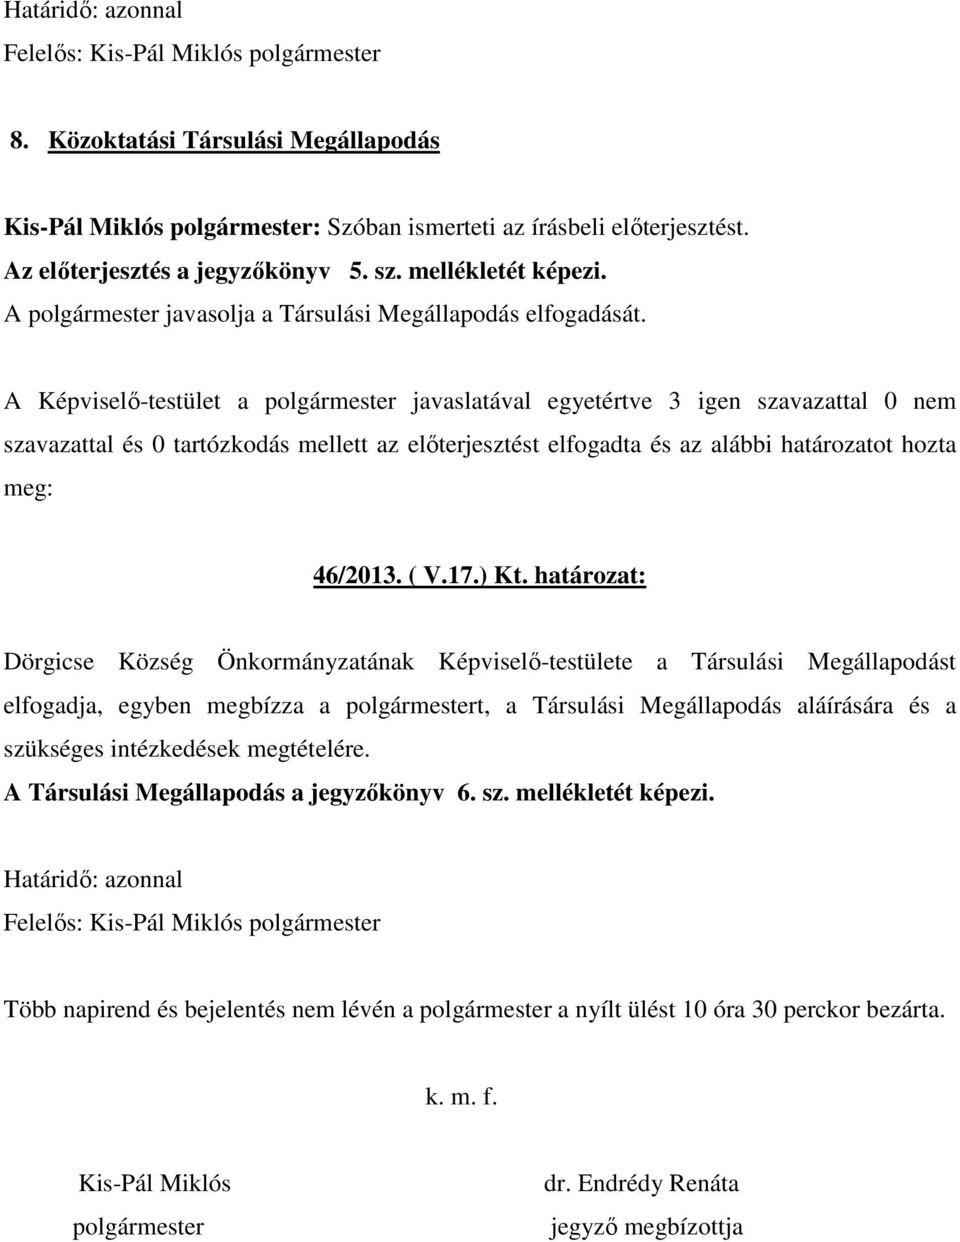 határozat: Dörgicse Község Önkormányzatának Képviselı-testülete a Társulási Megállapodást elfogadja, egyben megbízza a polgármestert, a Társulási Megállapodás aláírására és a szükséges intézkedések